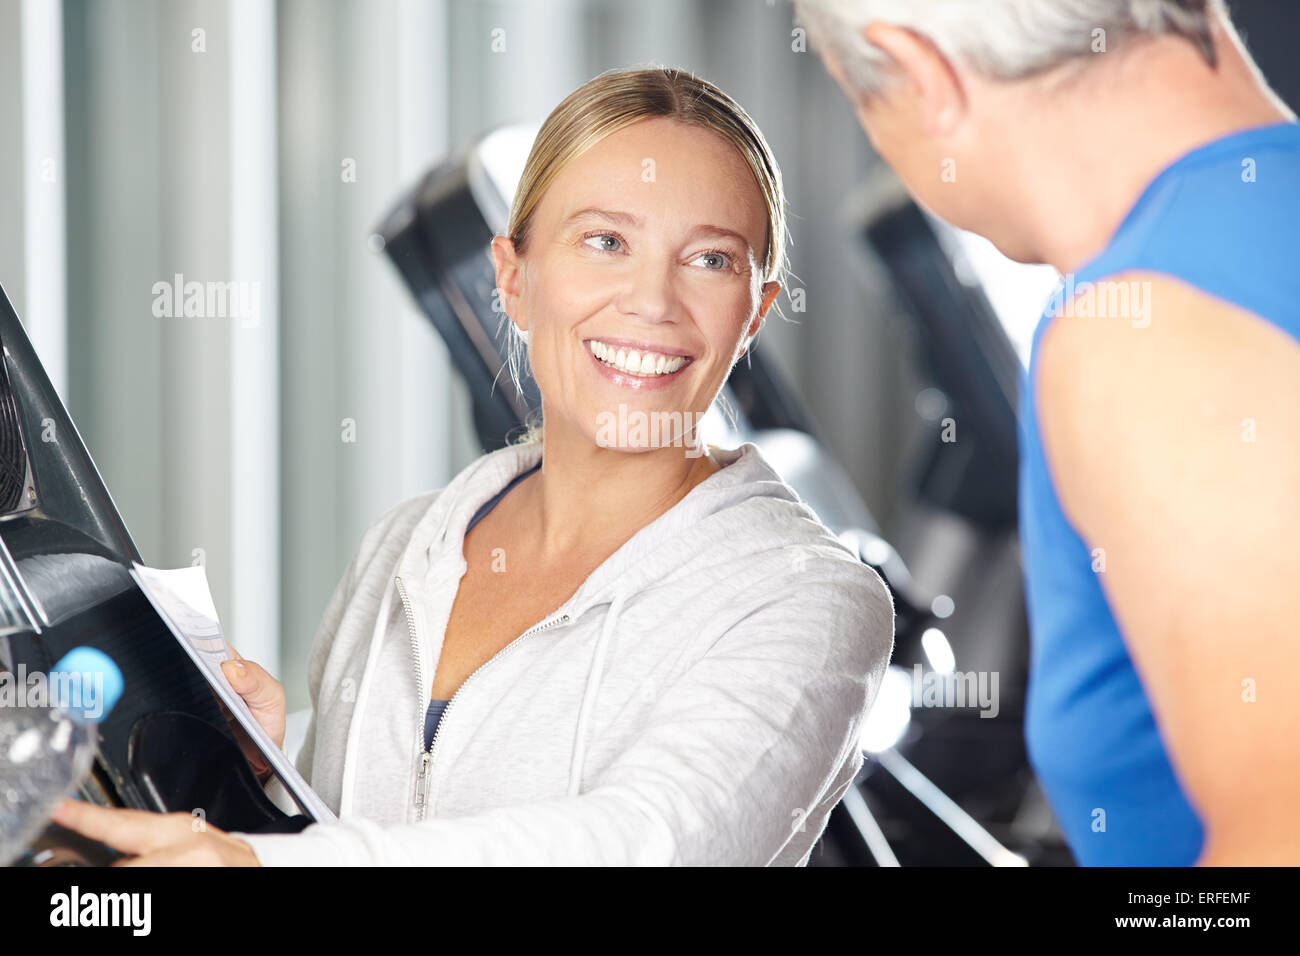 Femme fitness trainer aidant la haute sur tapis roulant dans un centre de remise en forme Banque D'Images